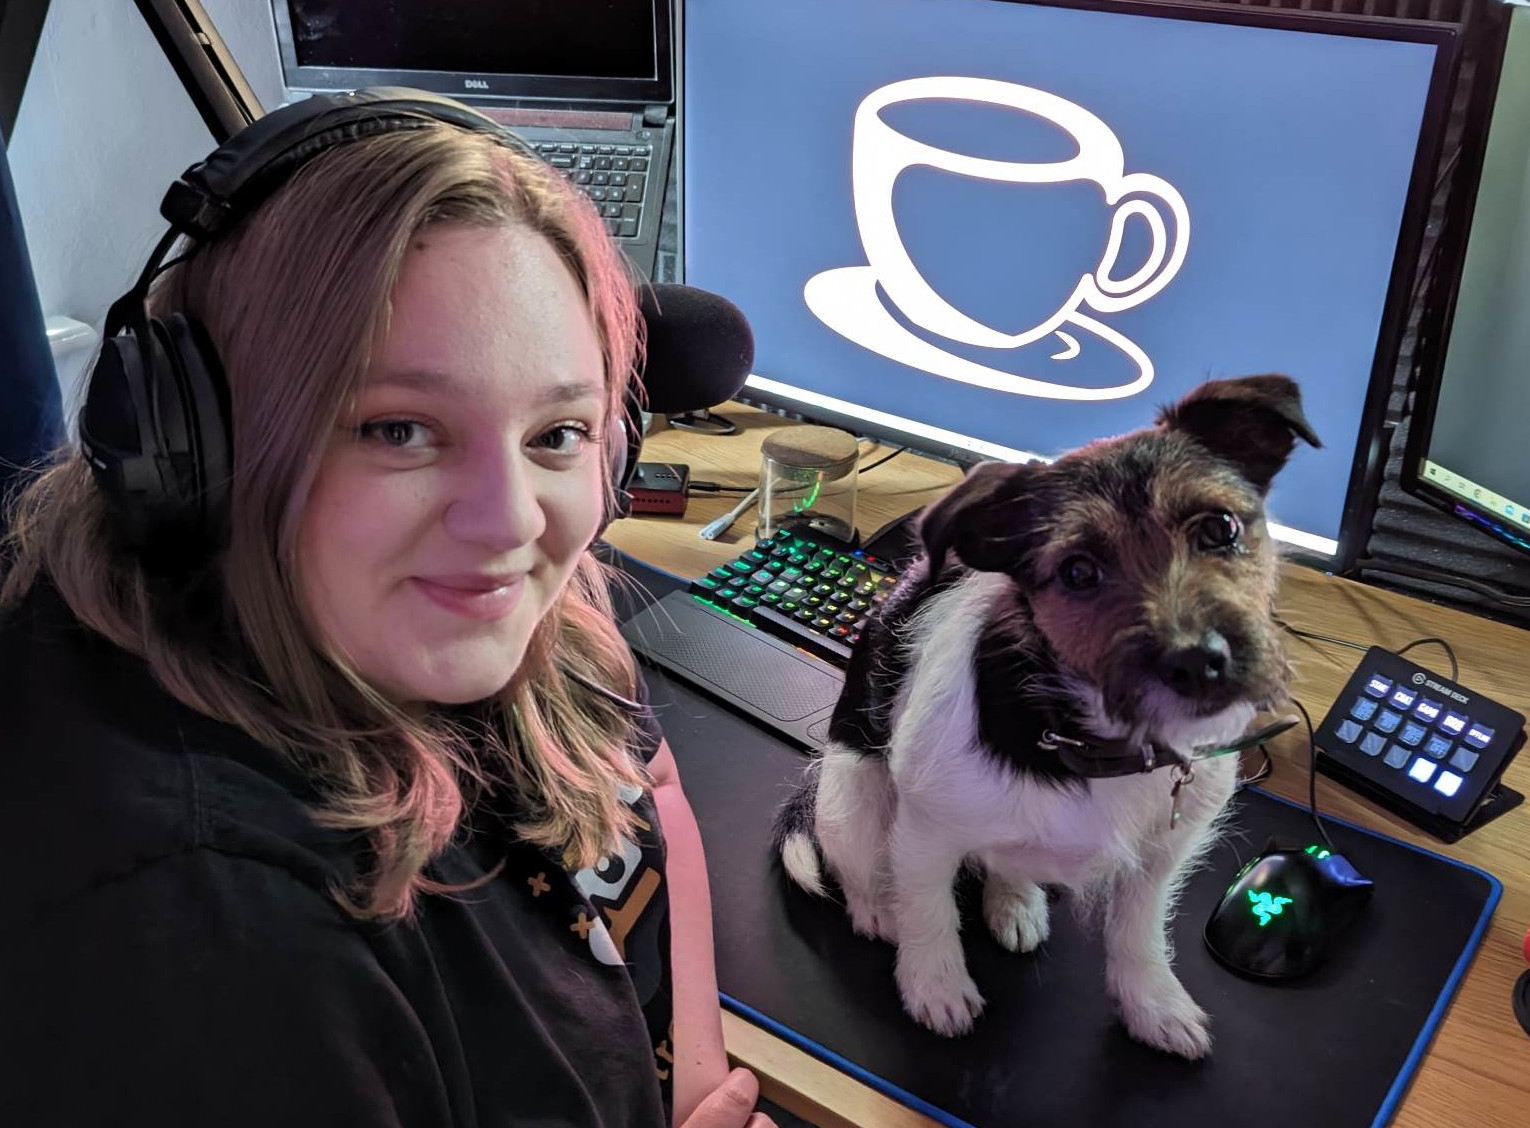 The Twitch streamer, Flippa_UK, with her dog.